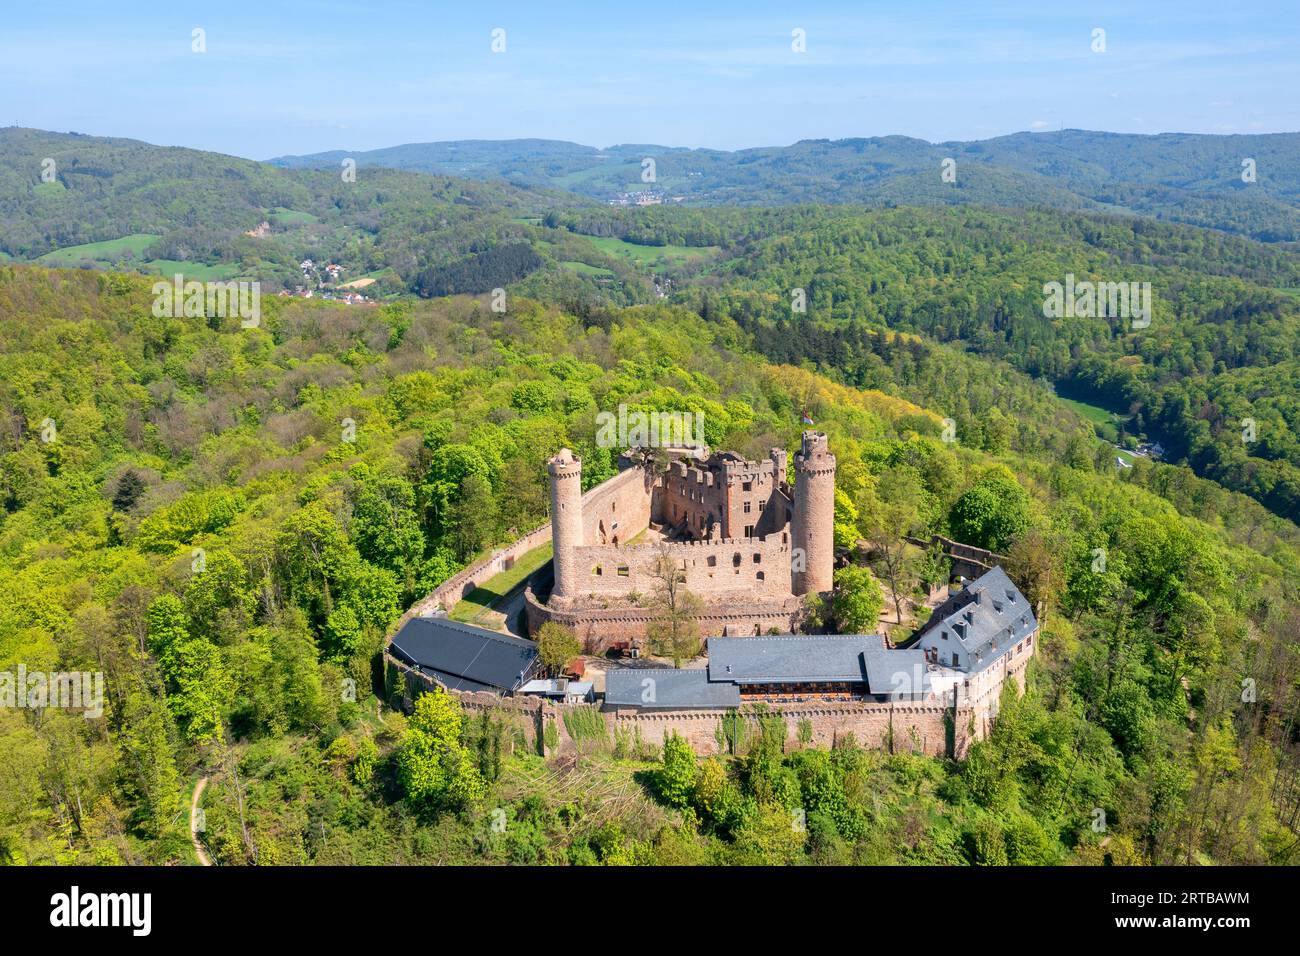 Schloss Auerbach bei Bensheim, Hessische Bergstraße, Odenwald, GEO Naturpark, Hessen, Deutschland Stockfoto